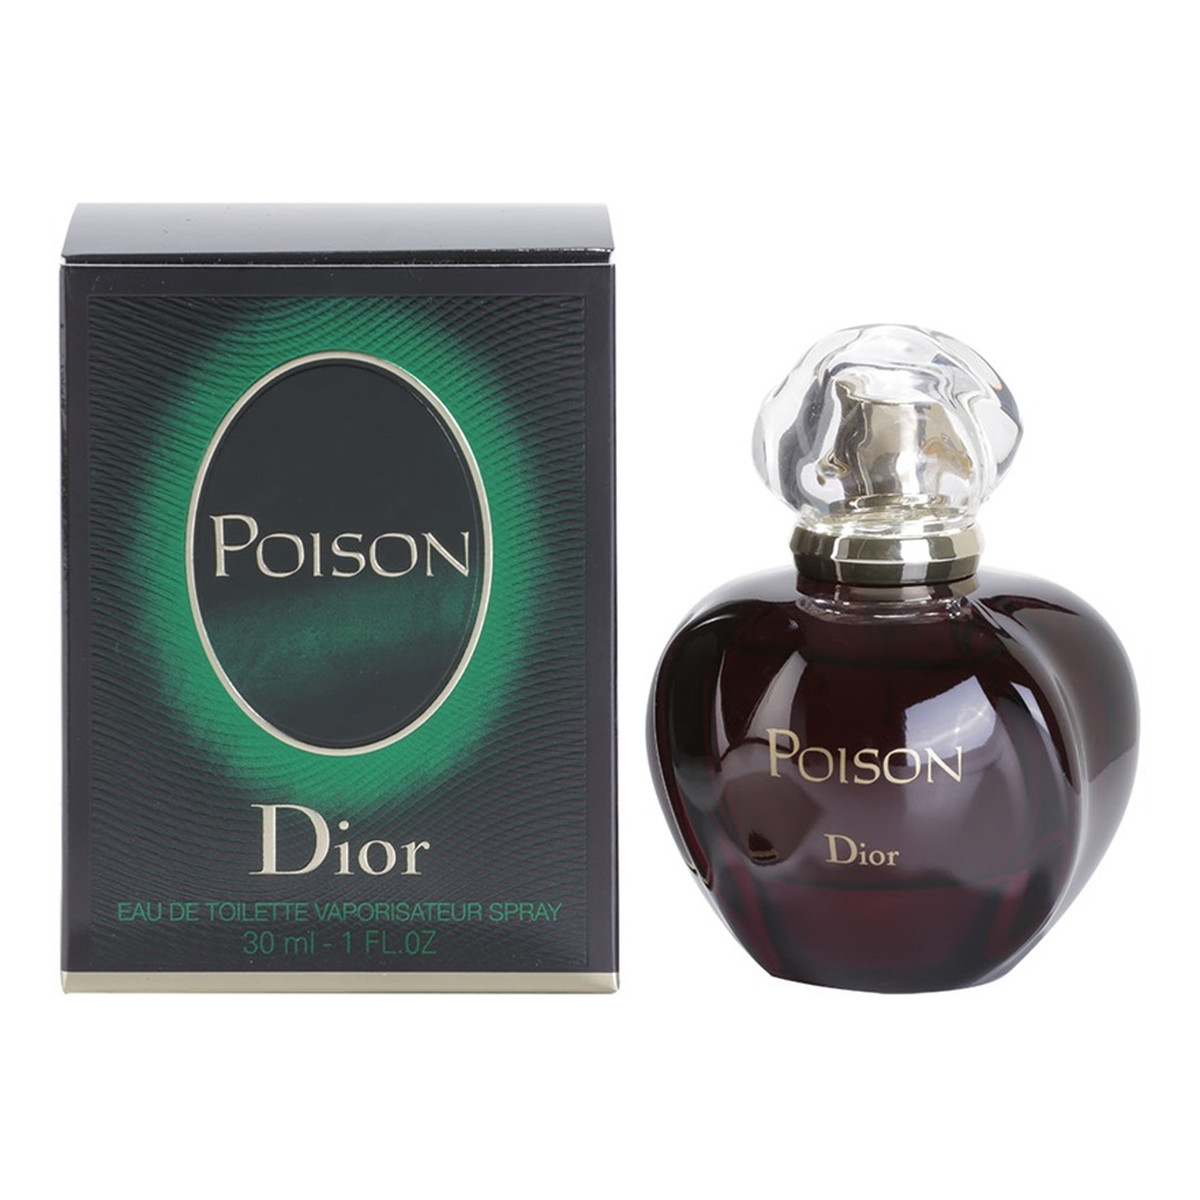 Dior Poison Poison Eau de Toilette woda toaletowa dla kobiet 30ml